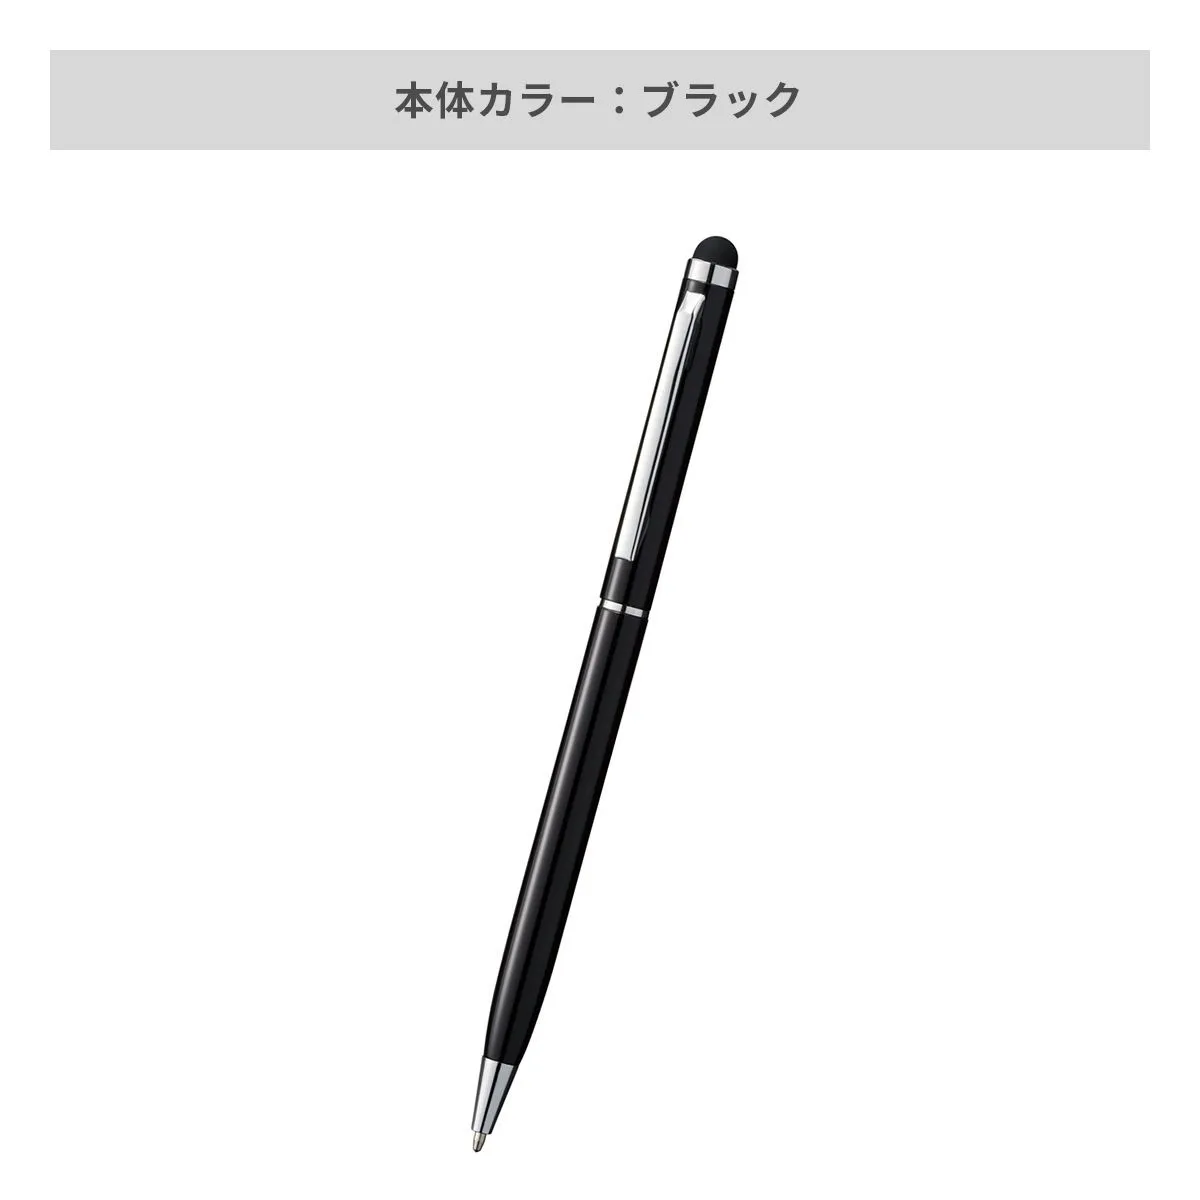 タッチペン付メタルスリムペン【多機能ペン / パッド印刷】 画像6